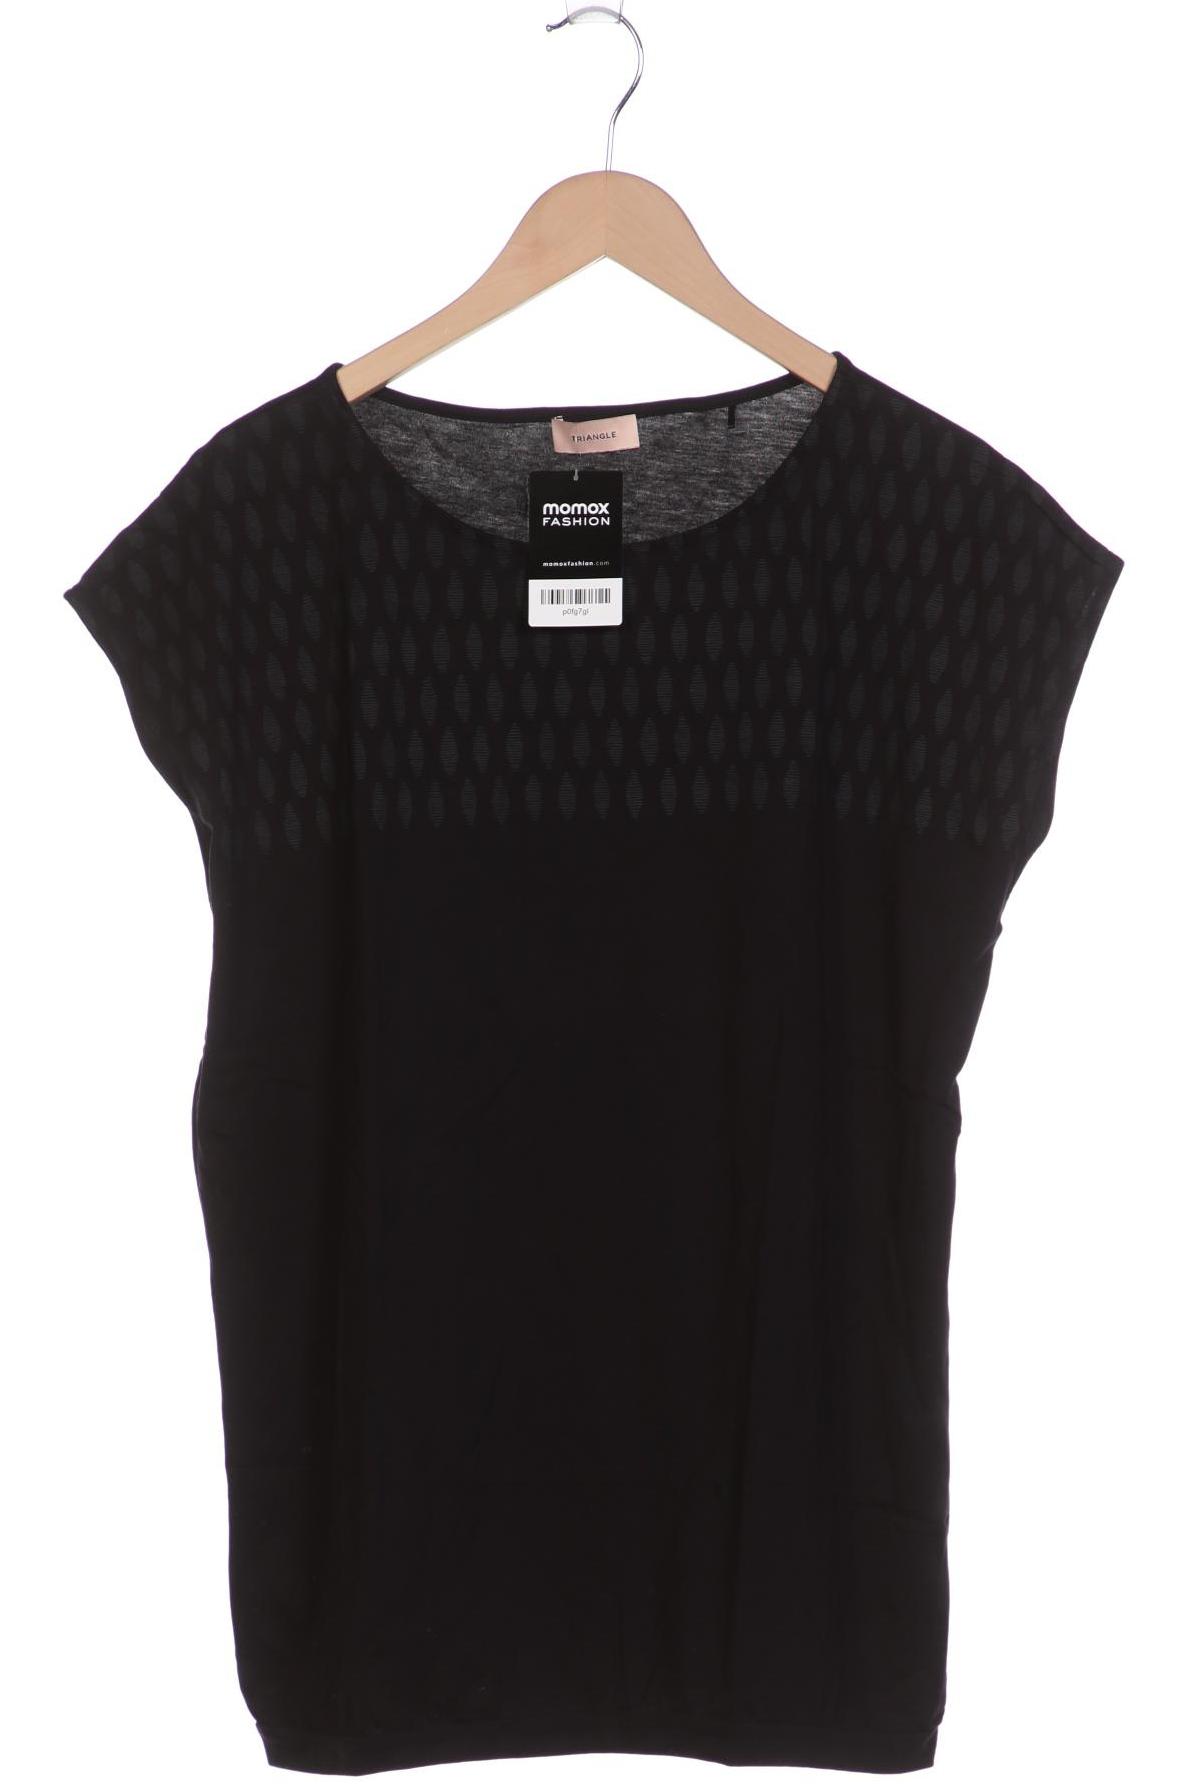 Triangle Damen T-Shirt, schwarz, Gr. 46 von Triangle